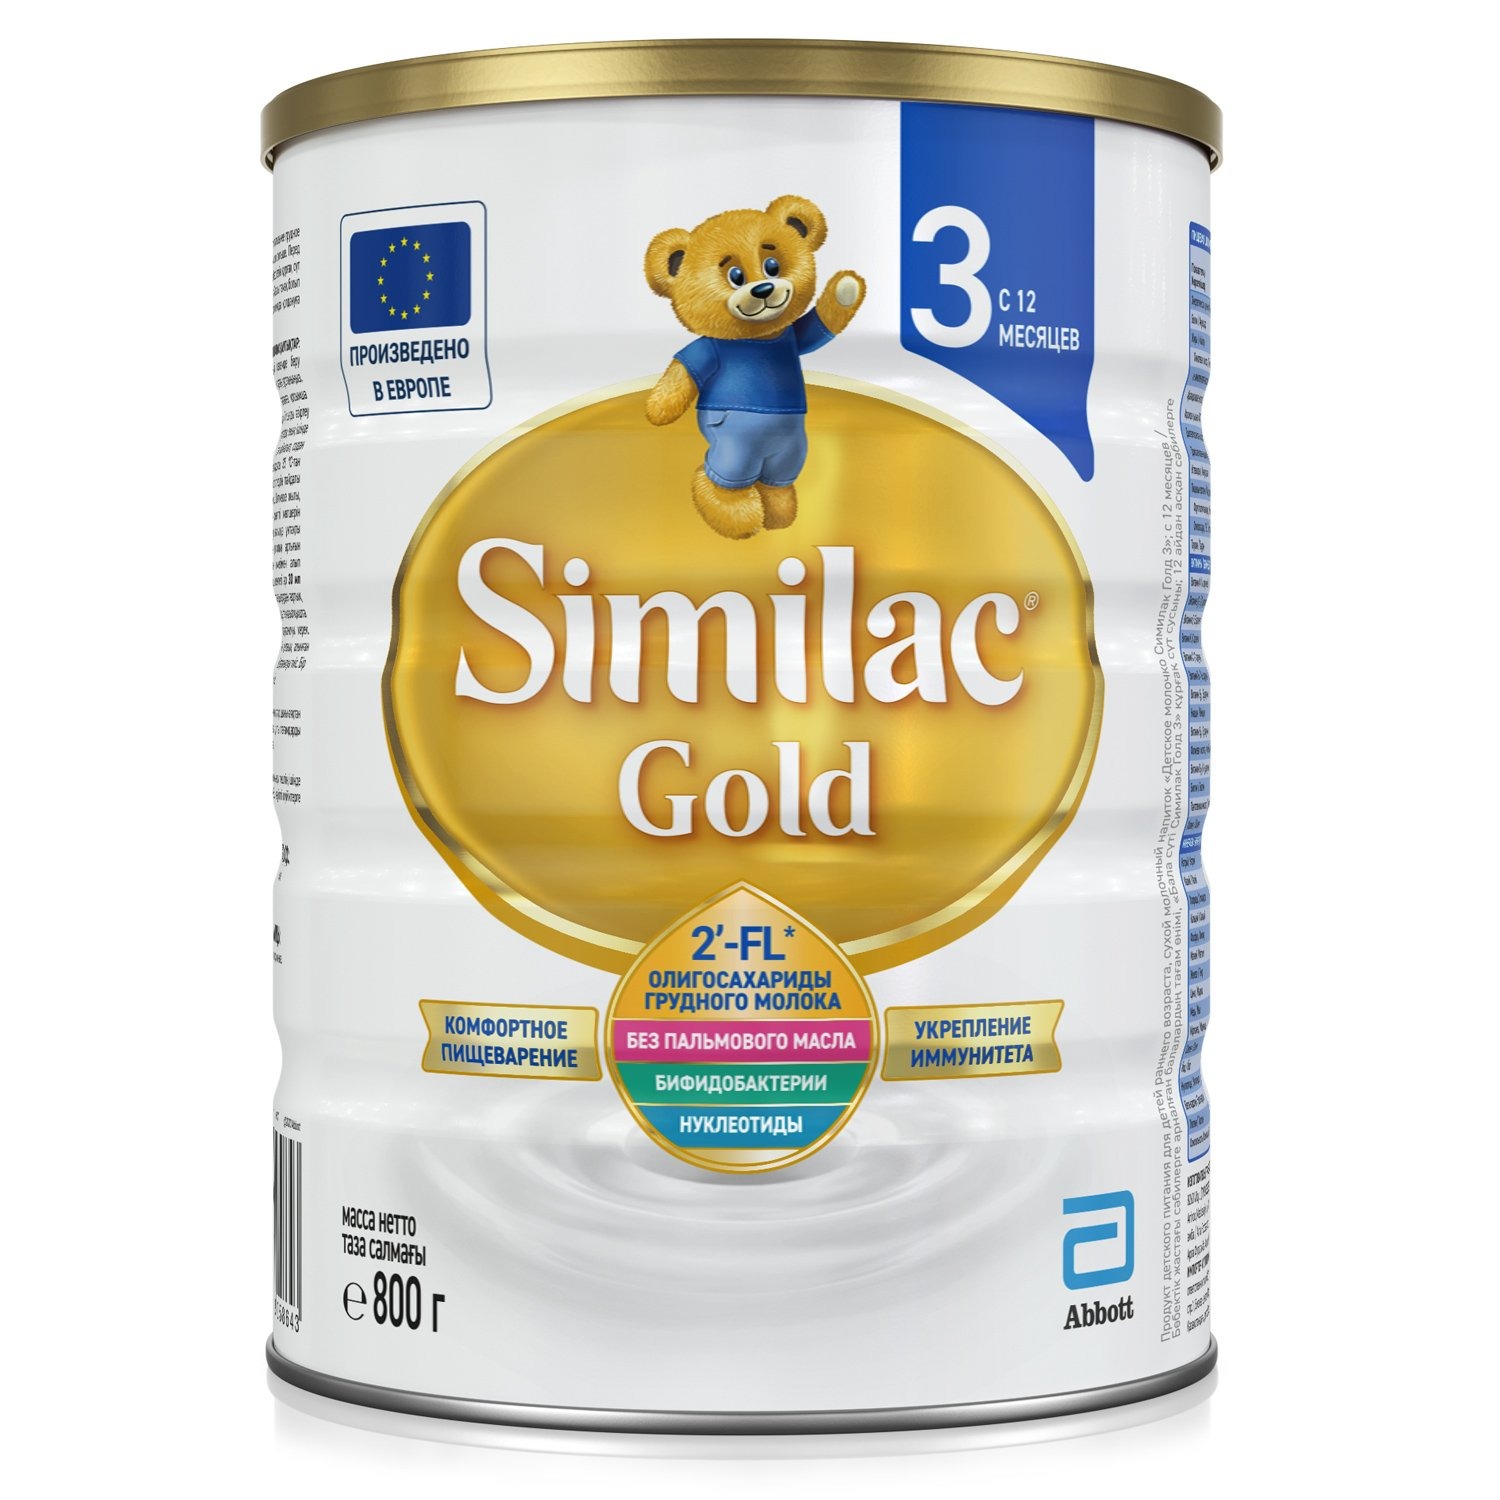 Детская смесь Similac Gold 3 молочная сухая c 2-FL олигосахаридами с 12 м. 800 г